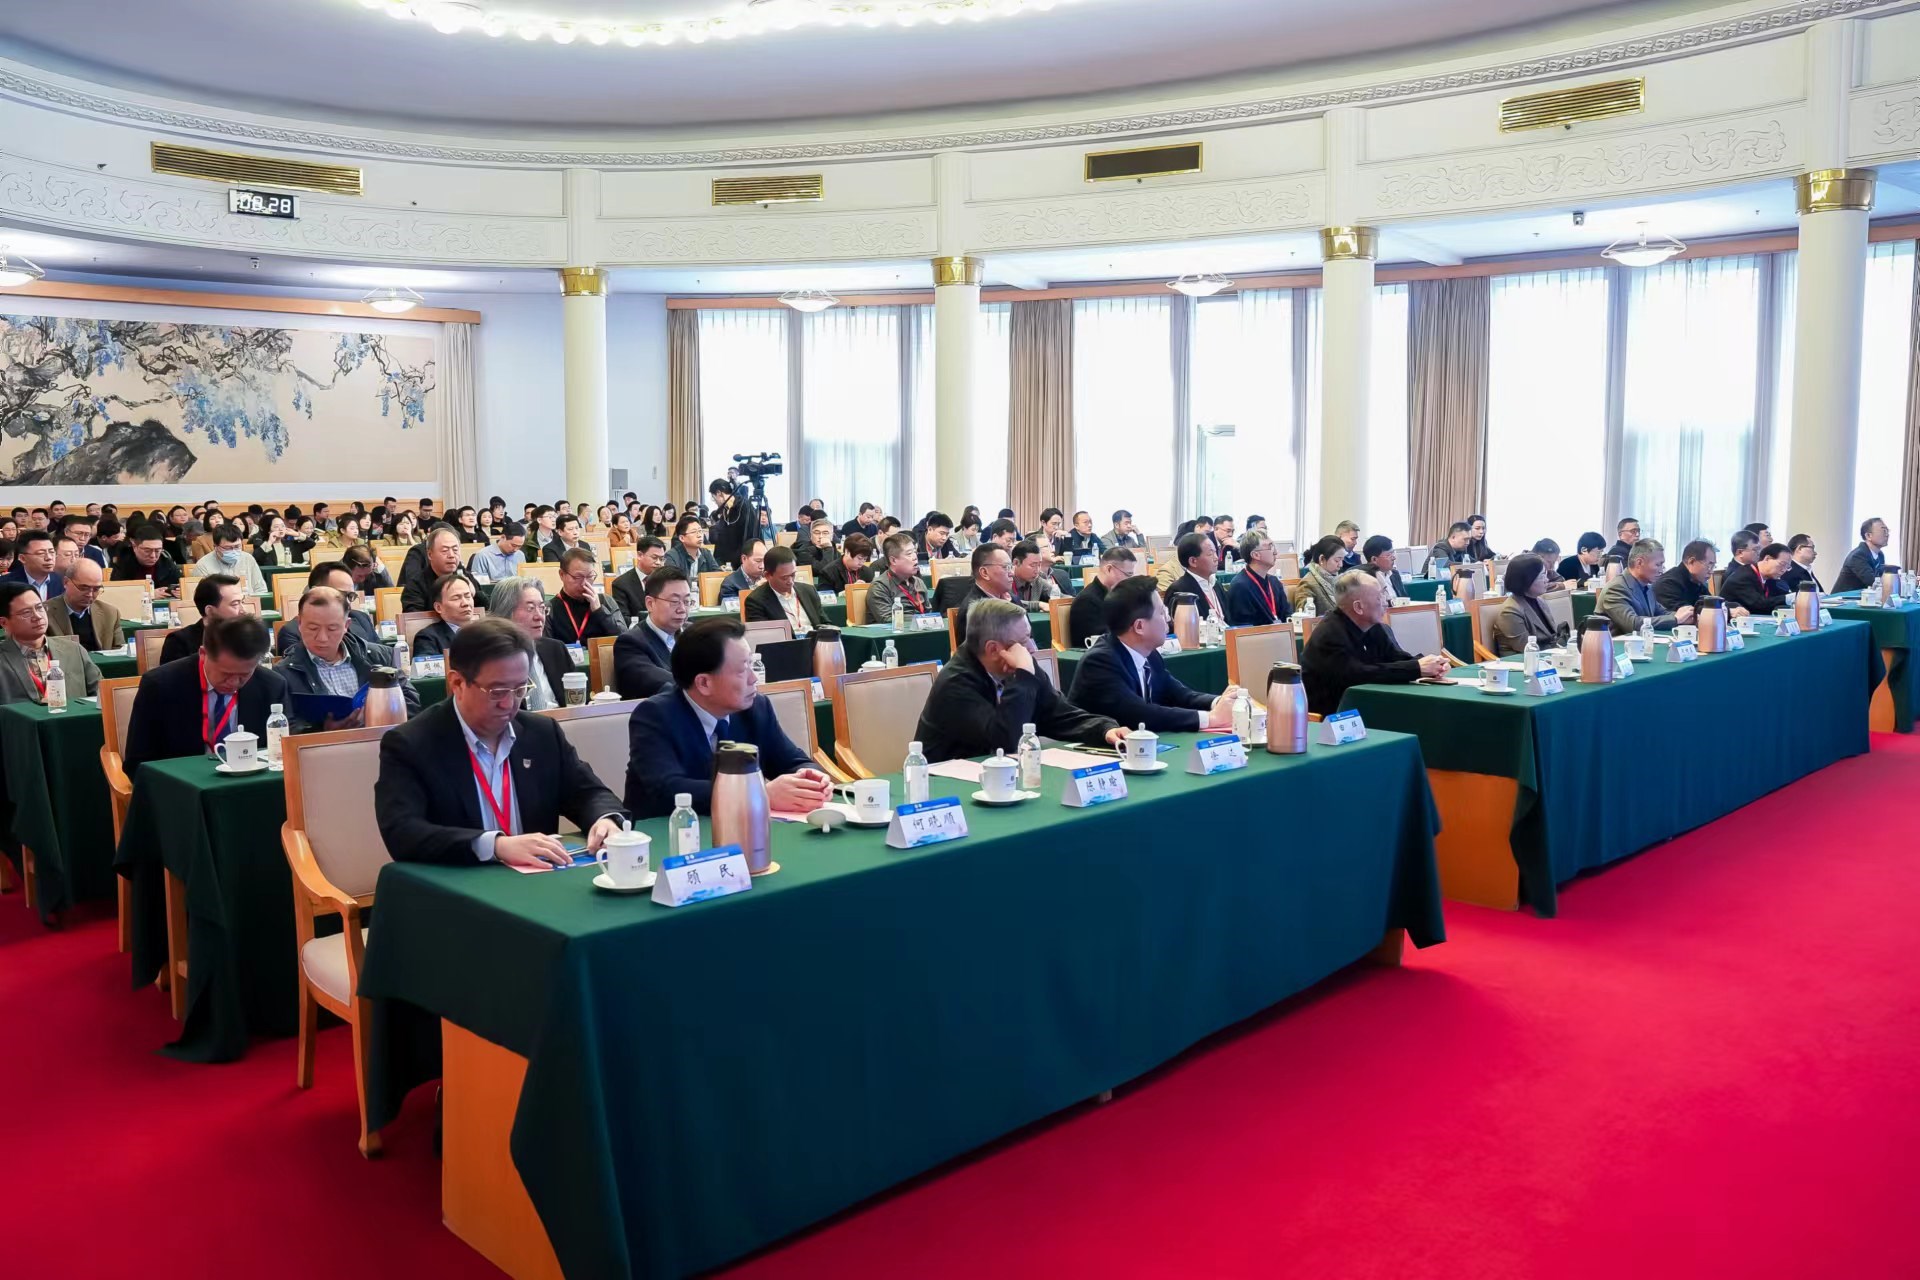 山东省医学会第十六次器官移植学术会议顺利举办